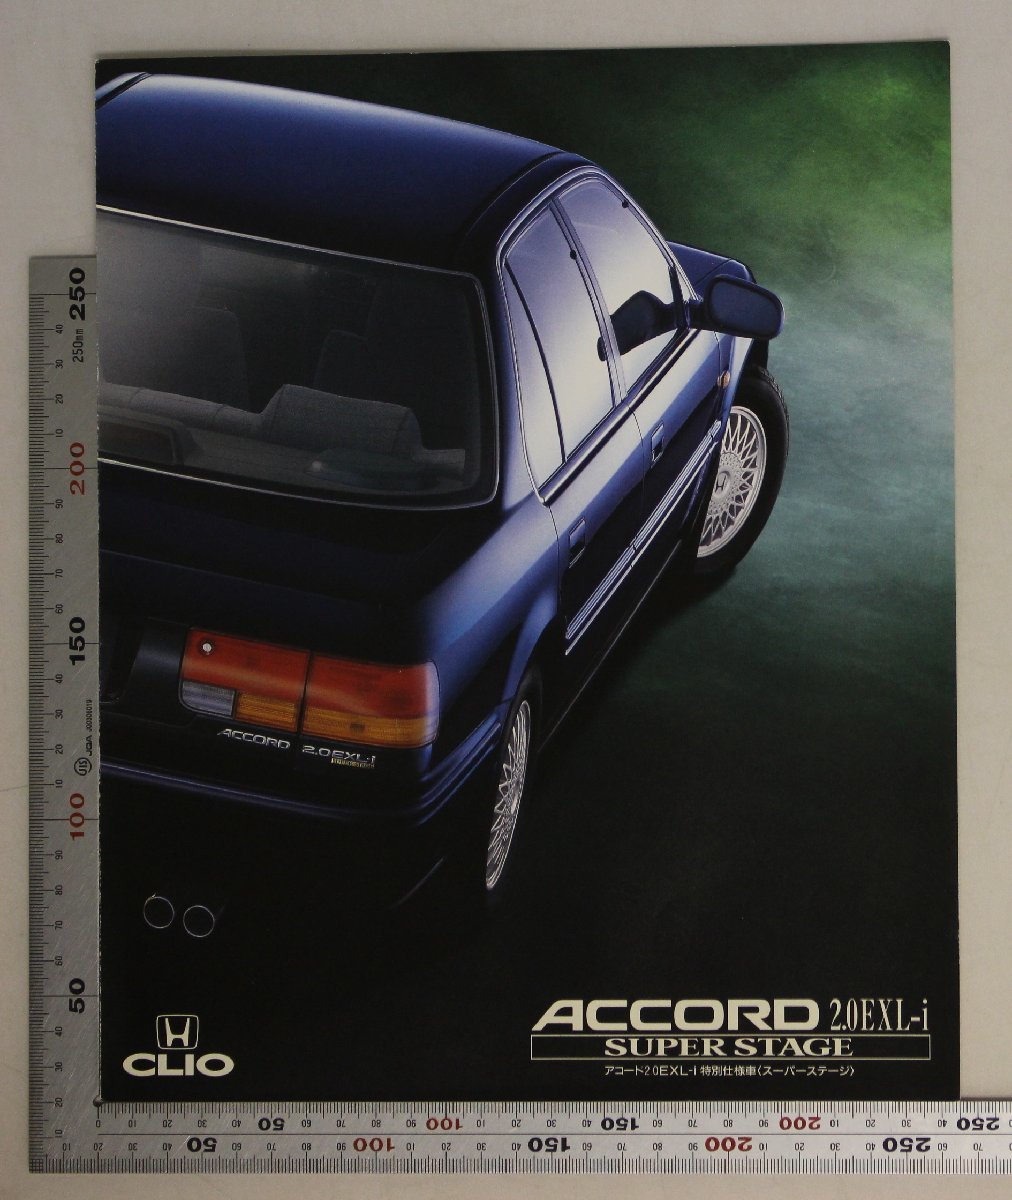 自動車カタログ『ACCORD 2.0EXL-i SUPER STAGE』1993年3月 HONDA 補足:ホンダ/アコード2.0EXL-i特別仕様車スーパーステージ/ホンダ・E-CB3_画像1